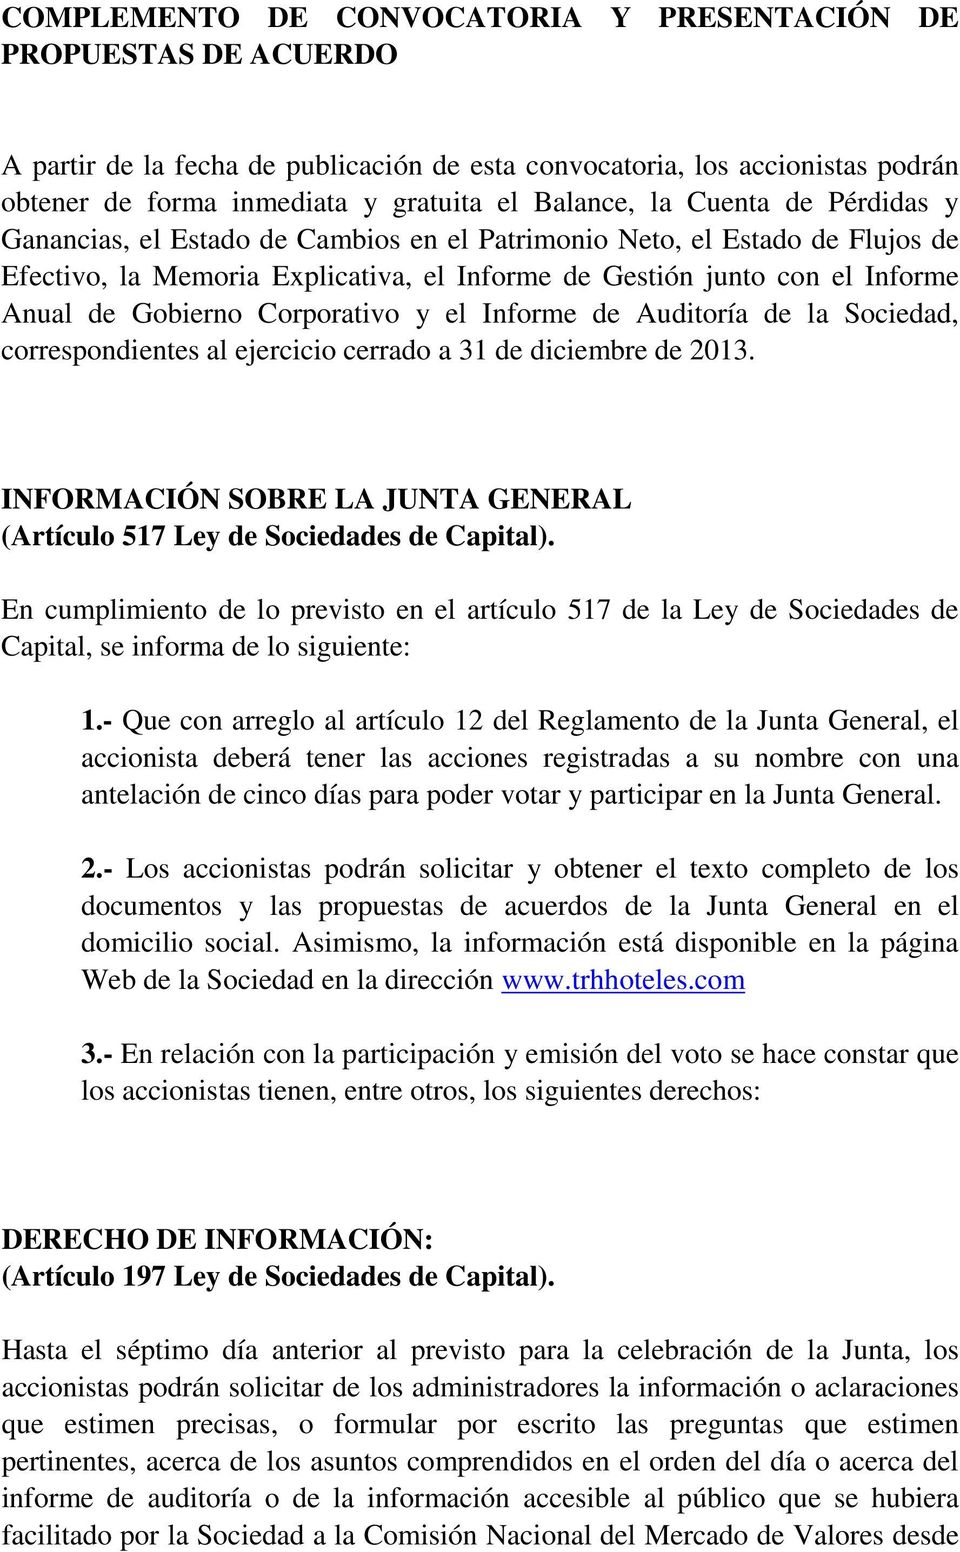 Corporativo y el Informe de Auditoría de la Sociedad, correspondientes al ejercicio cerrado a 31 de diciembre de 2013. INFORMACIÓN SOBRE LA JUNTA GENERAL (Artículo 517 Ley de Sociedades de Capital).